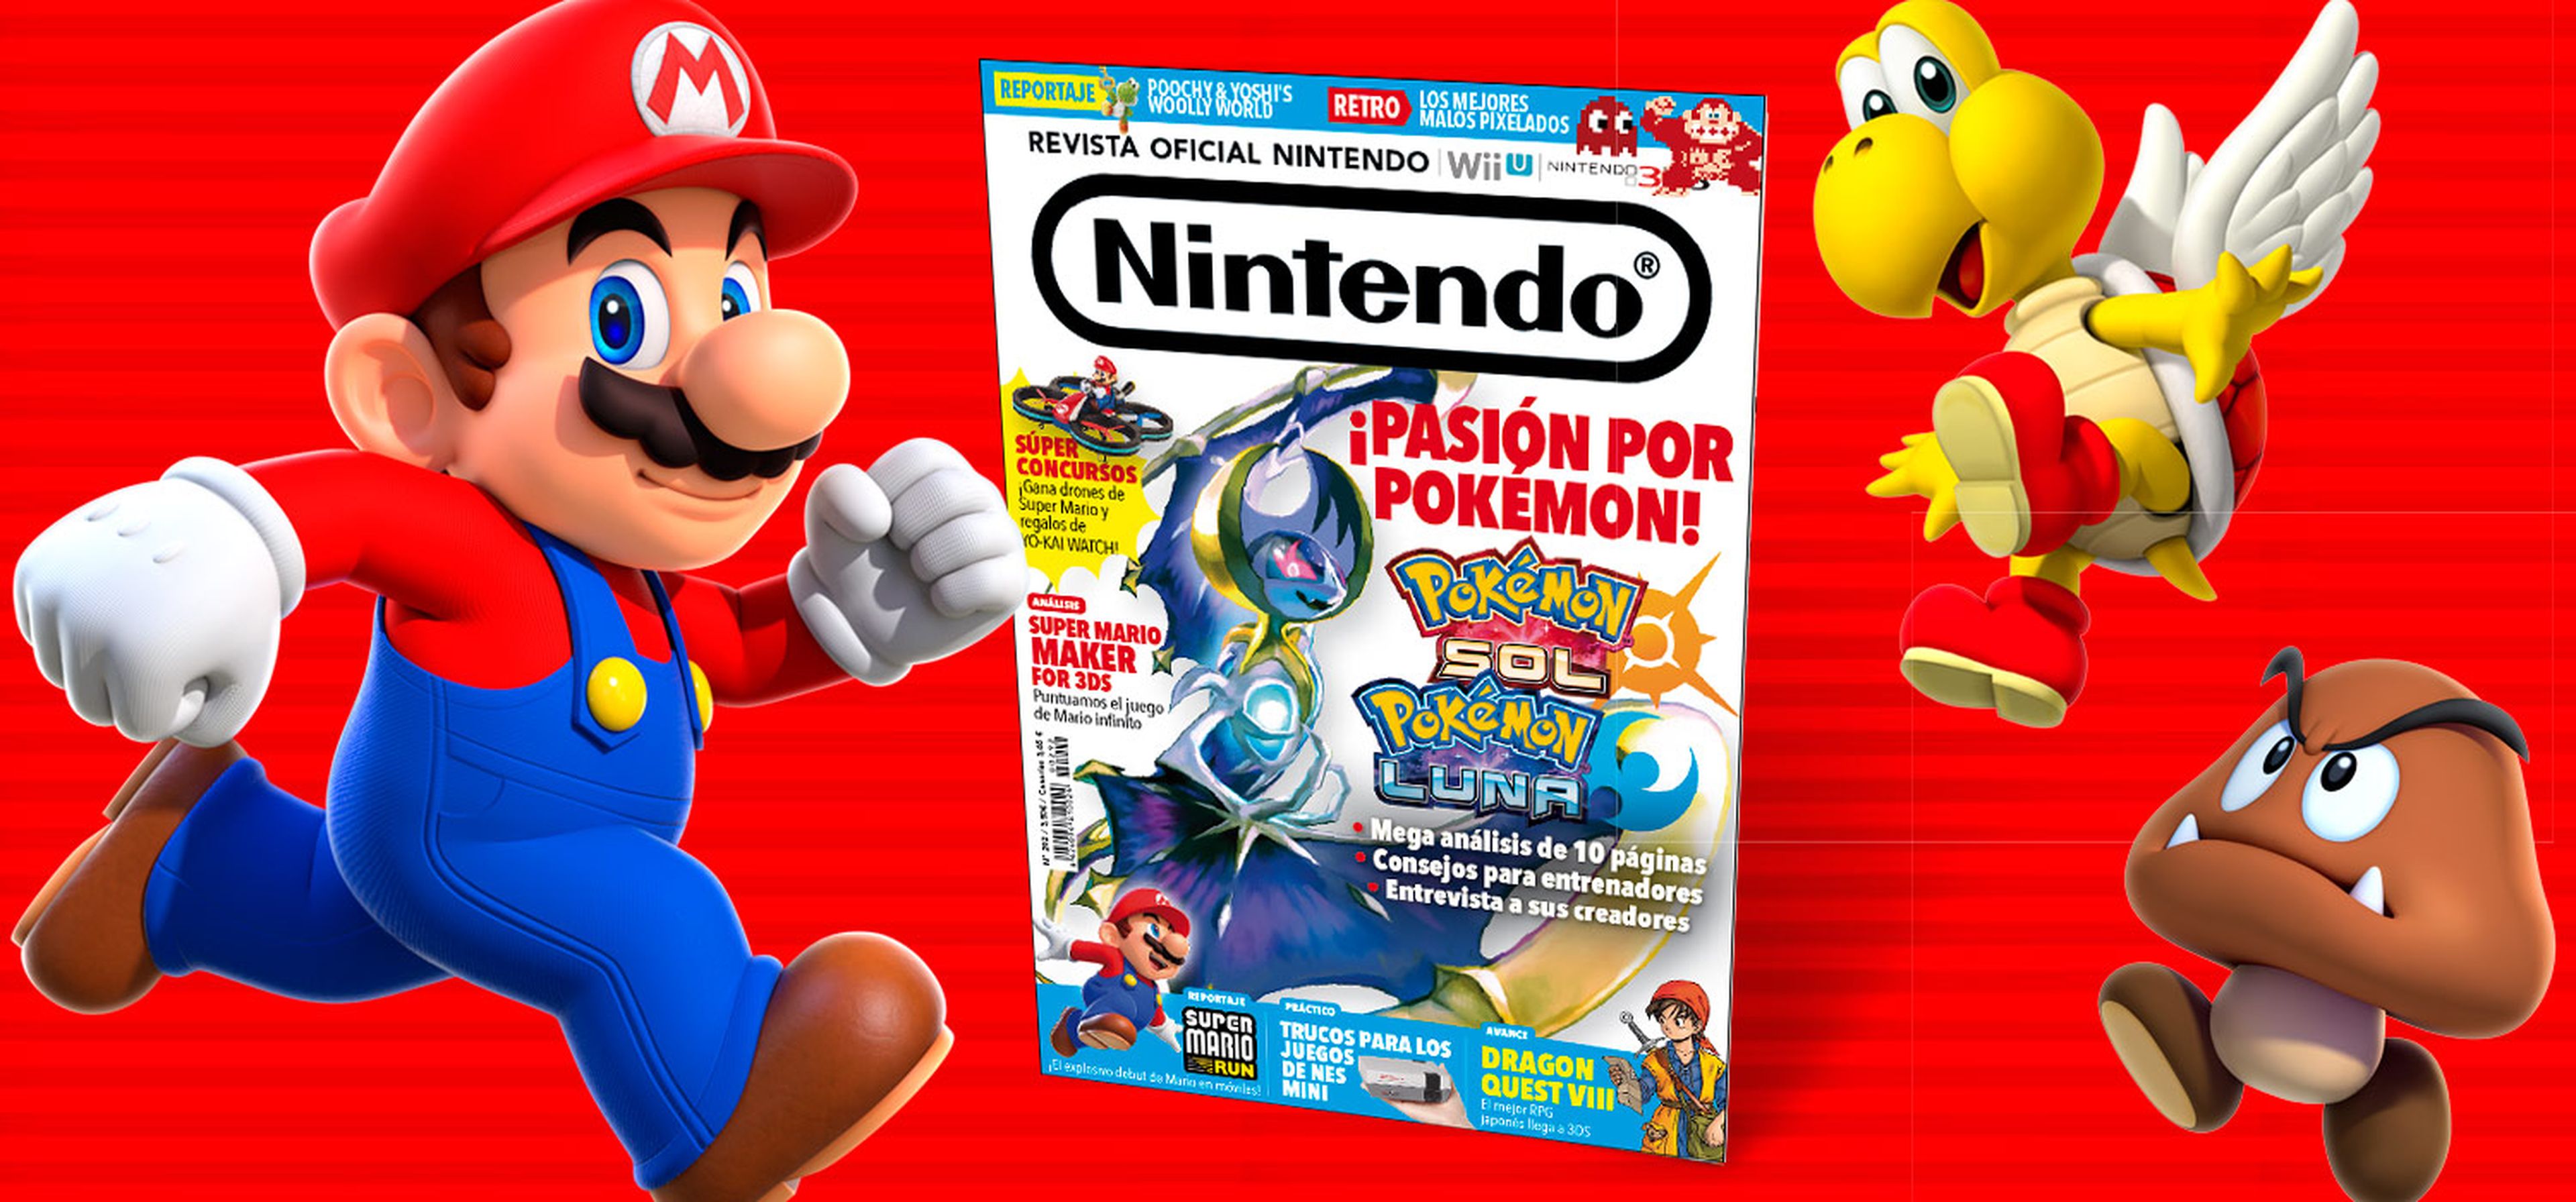 Revista Oficial Nintendo nº 292 ya a la venta